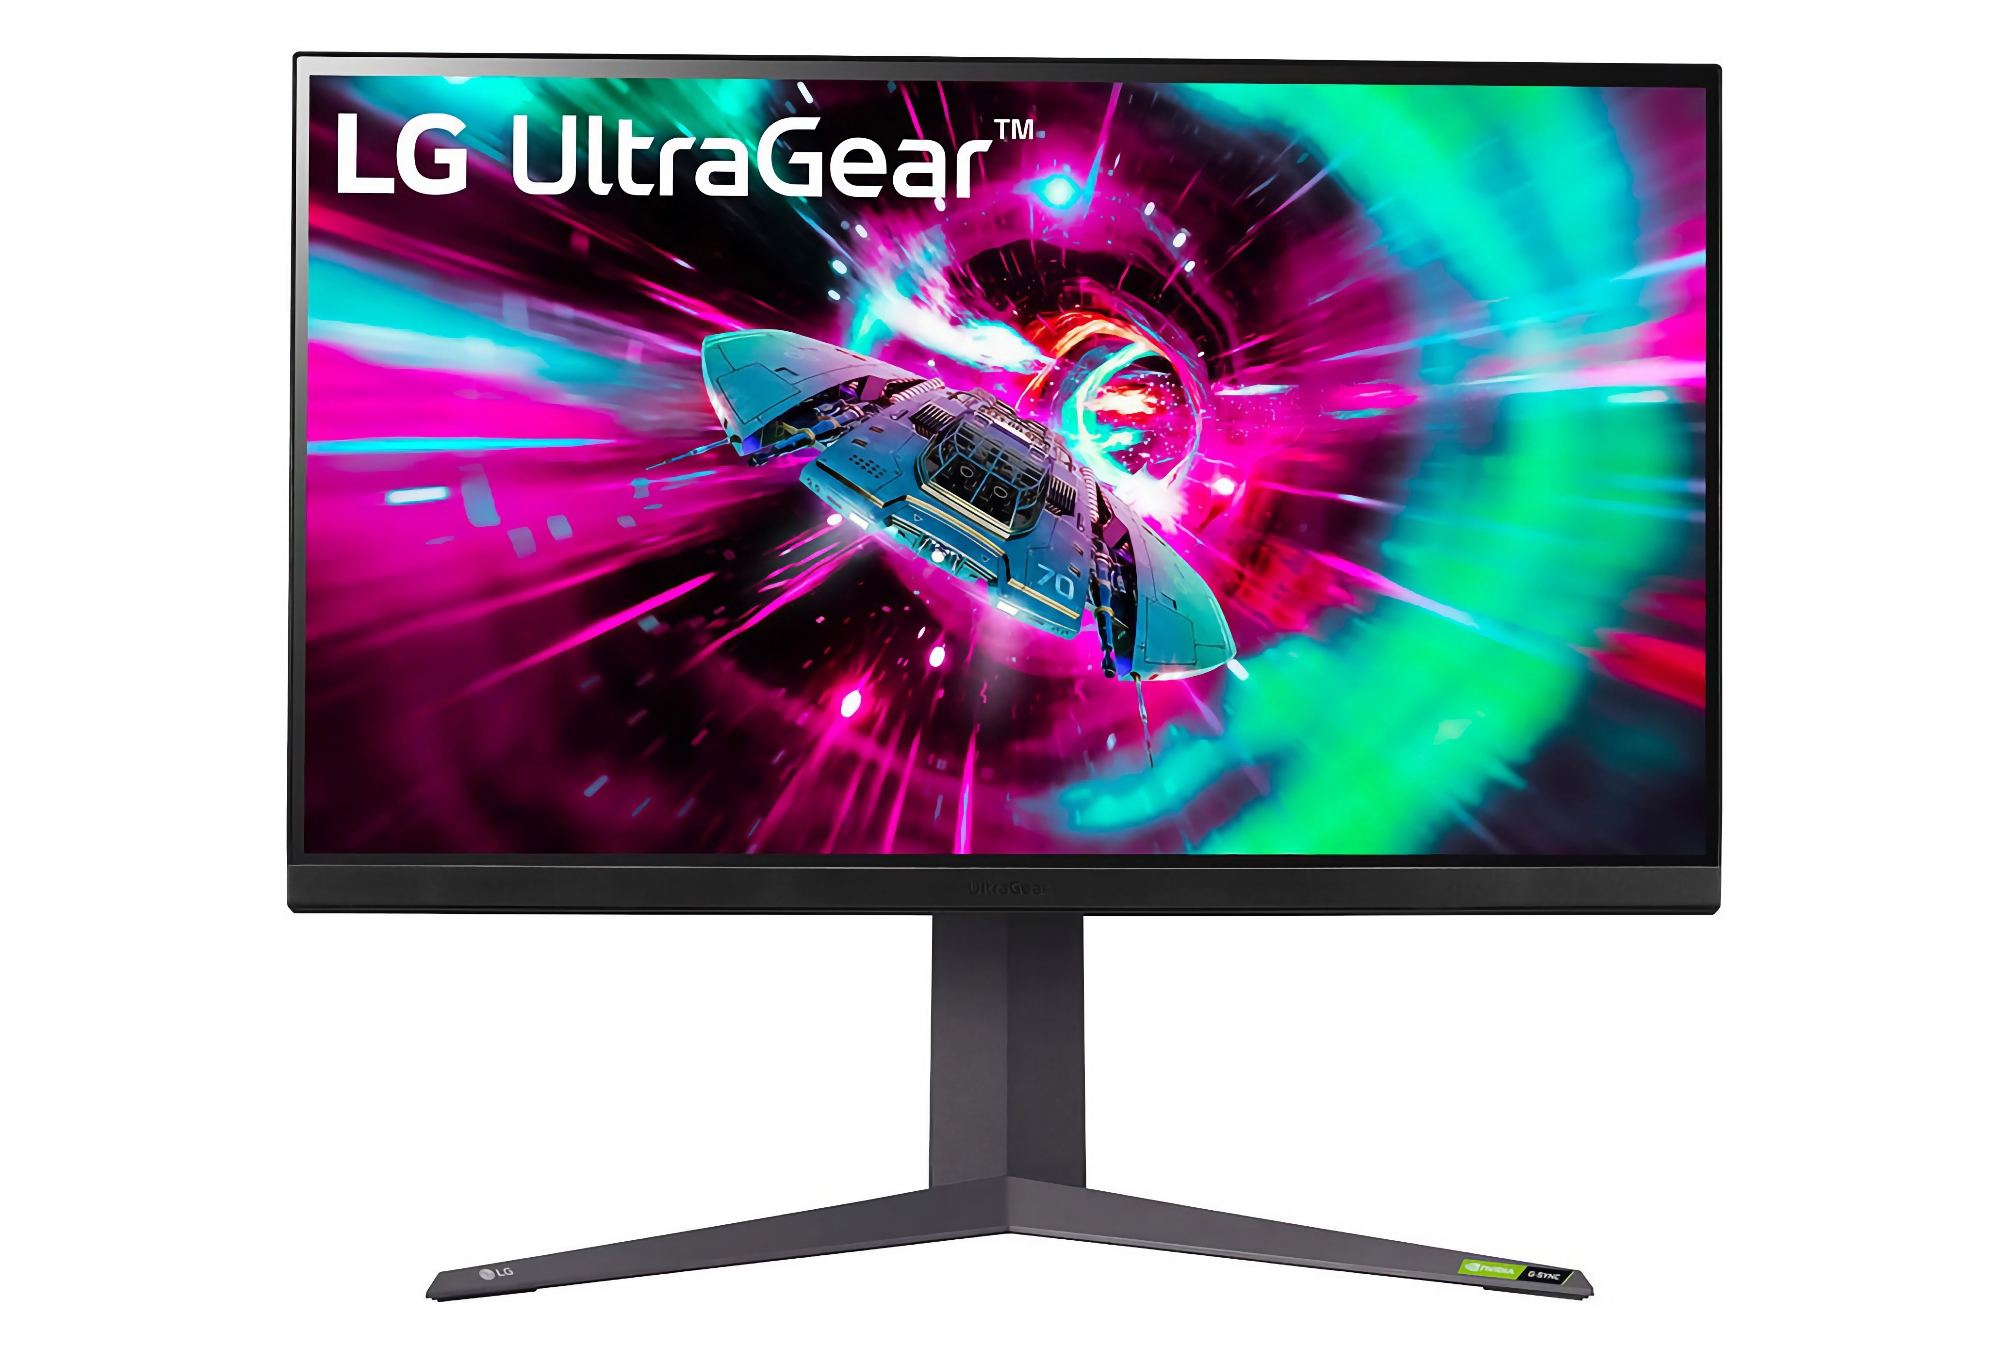 LG prezentuje nowe monitory UltraGear z ekranami 27-32″ i panelami IPS o częstotliwości odświeżania 144 Hz